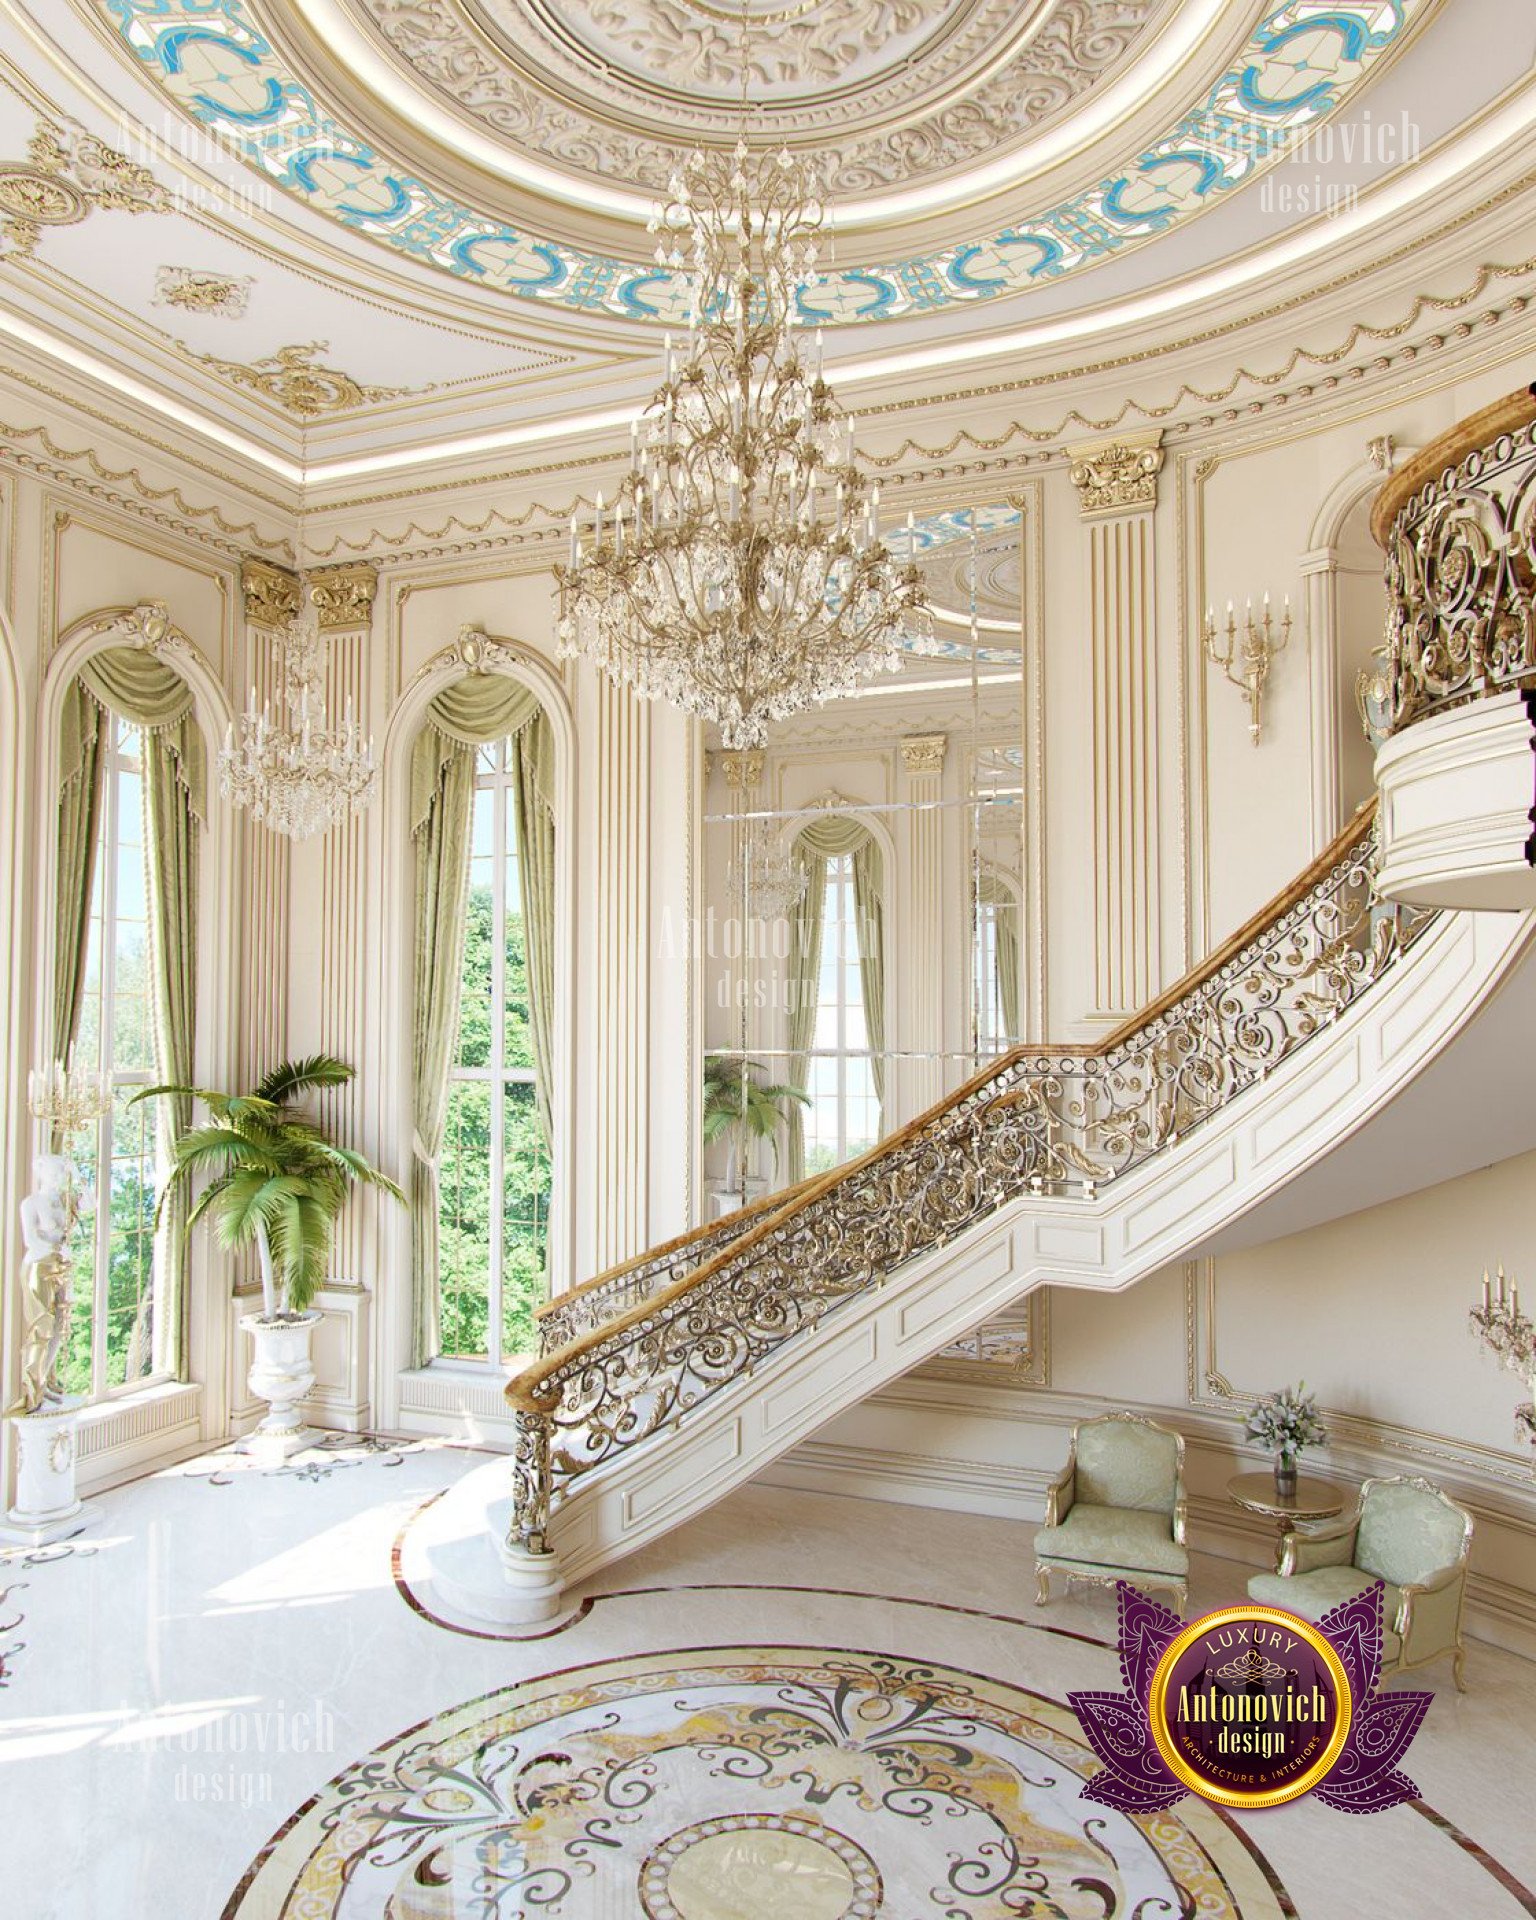 Classical luxury house interior - luxury interior design ...